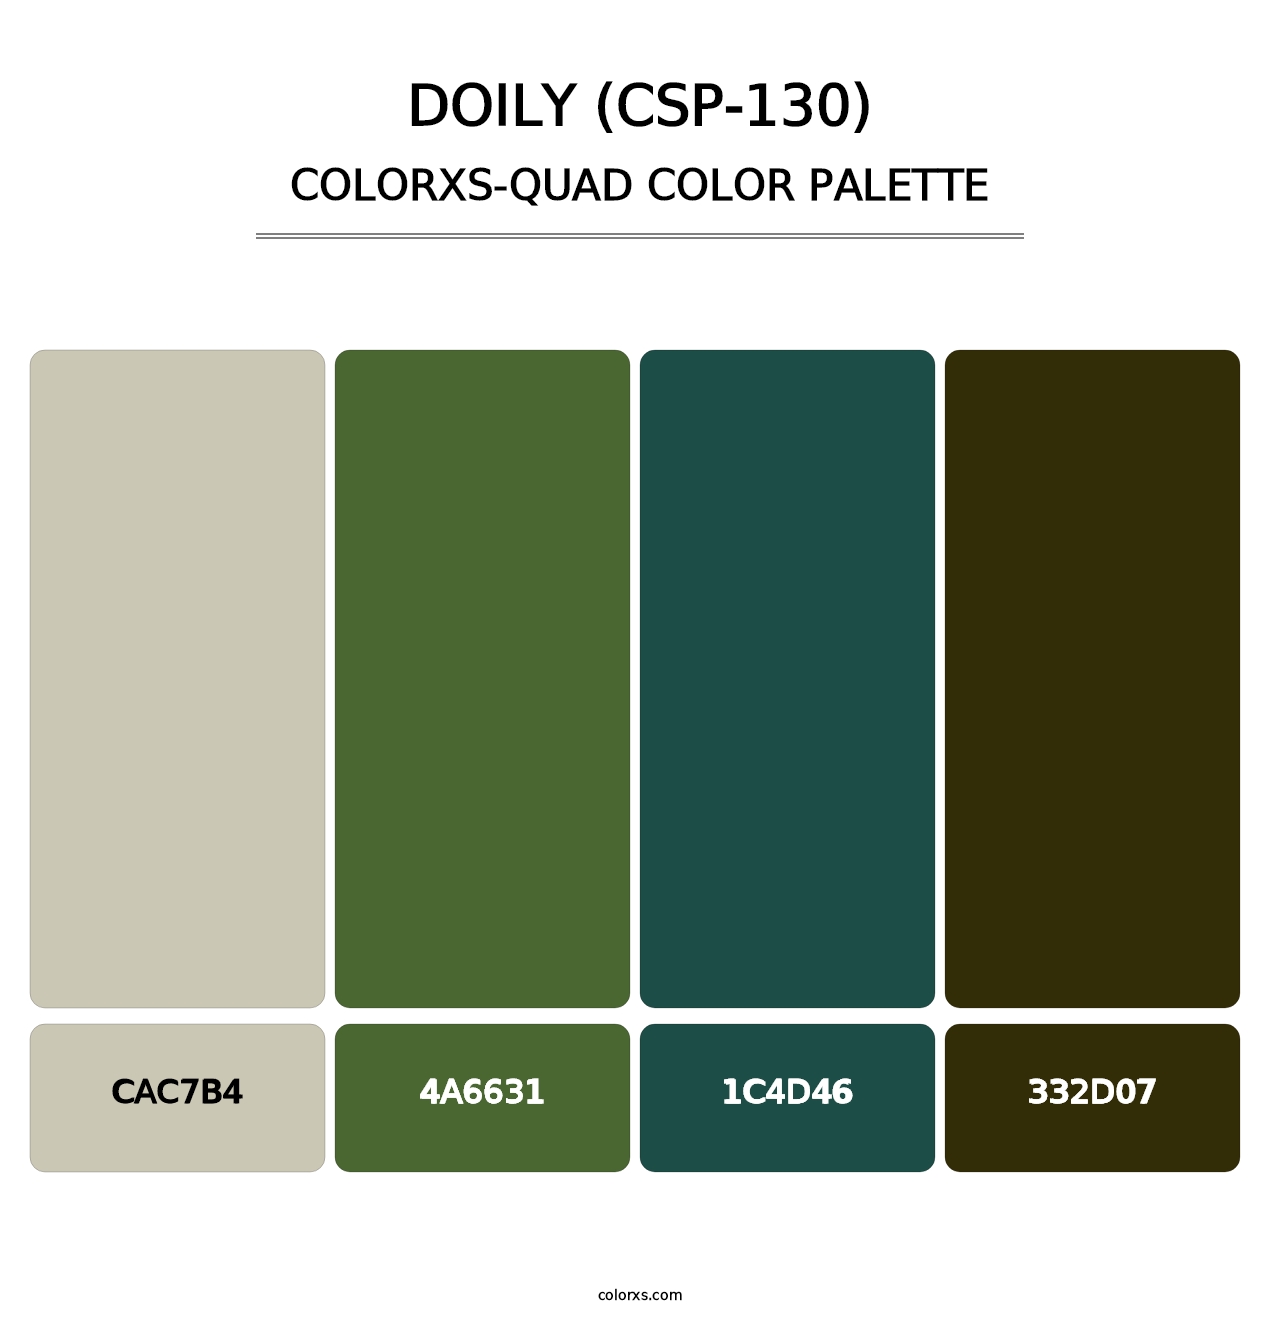 Doily (CSP-130) - Colorxs Quad Palette